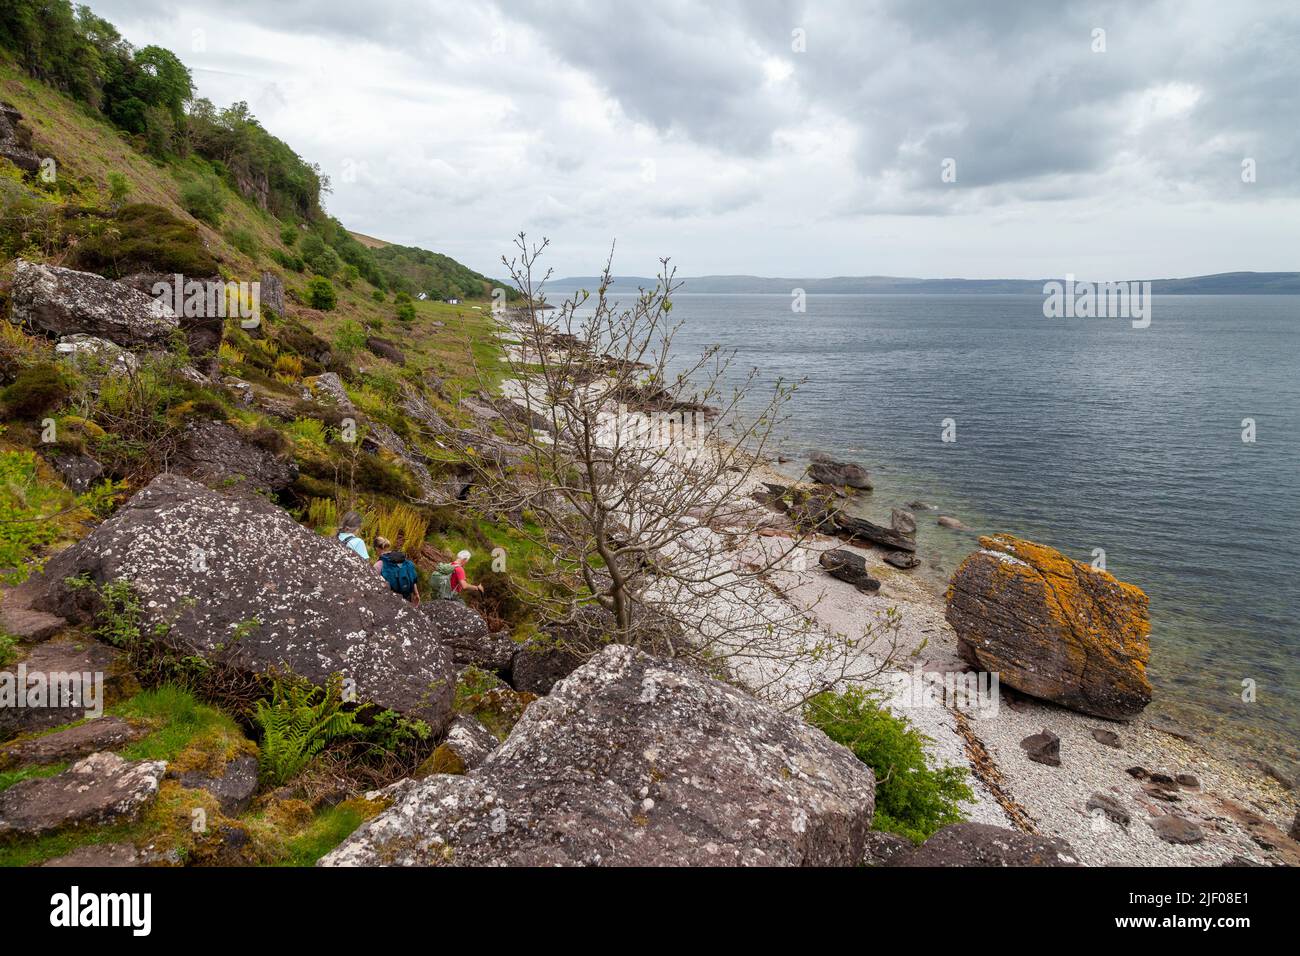 Rocas caídas y una enorme roca a lo largo de la costa de Arran, Escocia Foto de stock